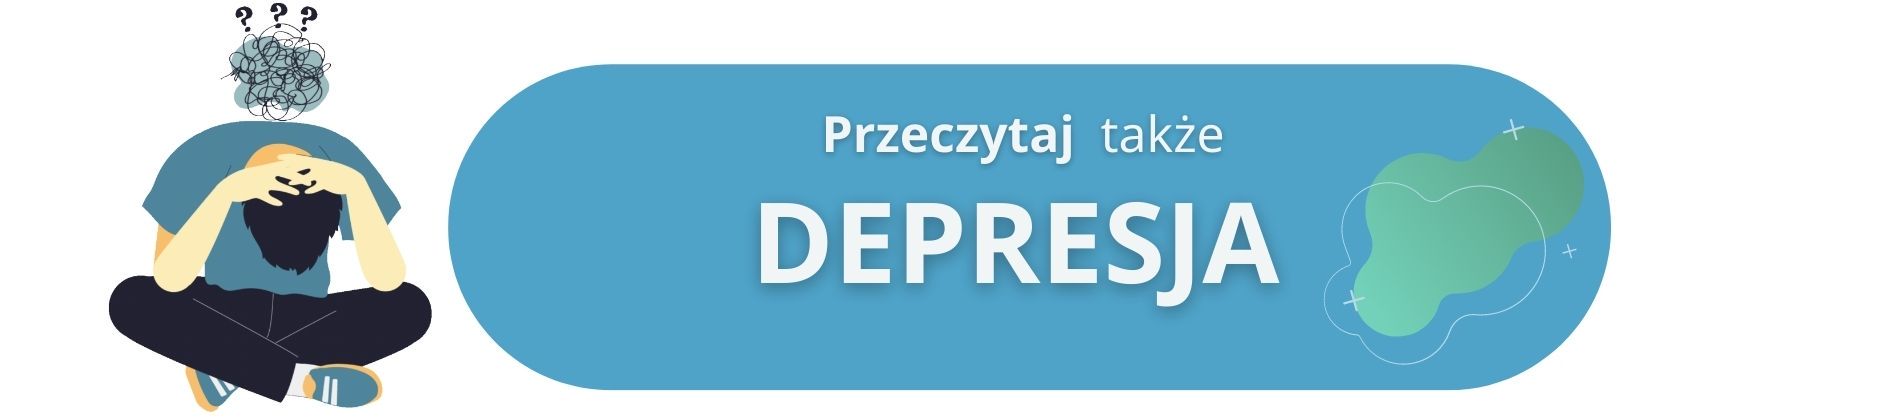 depresja - diagnoza i leczenie